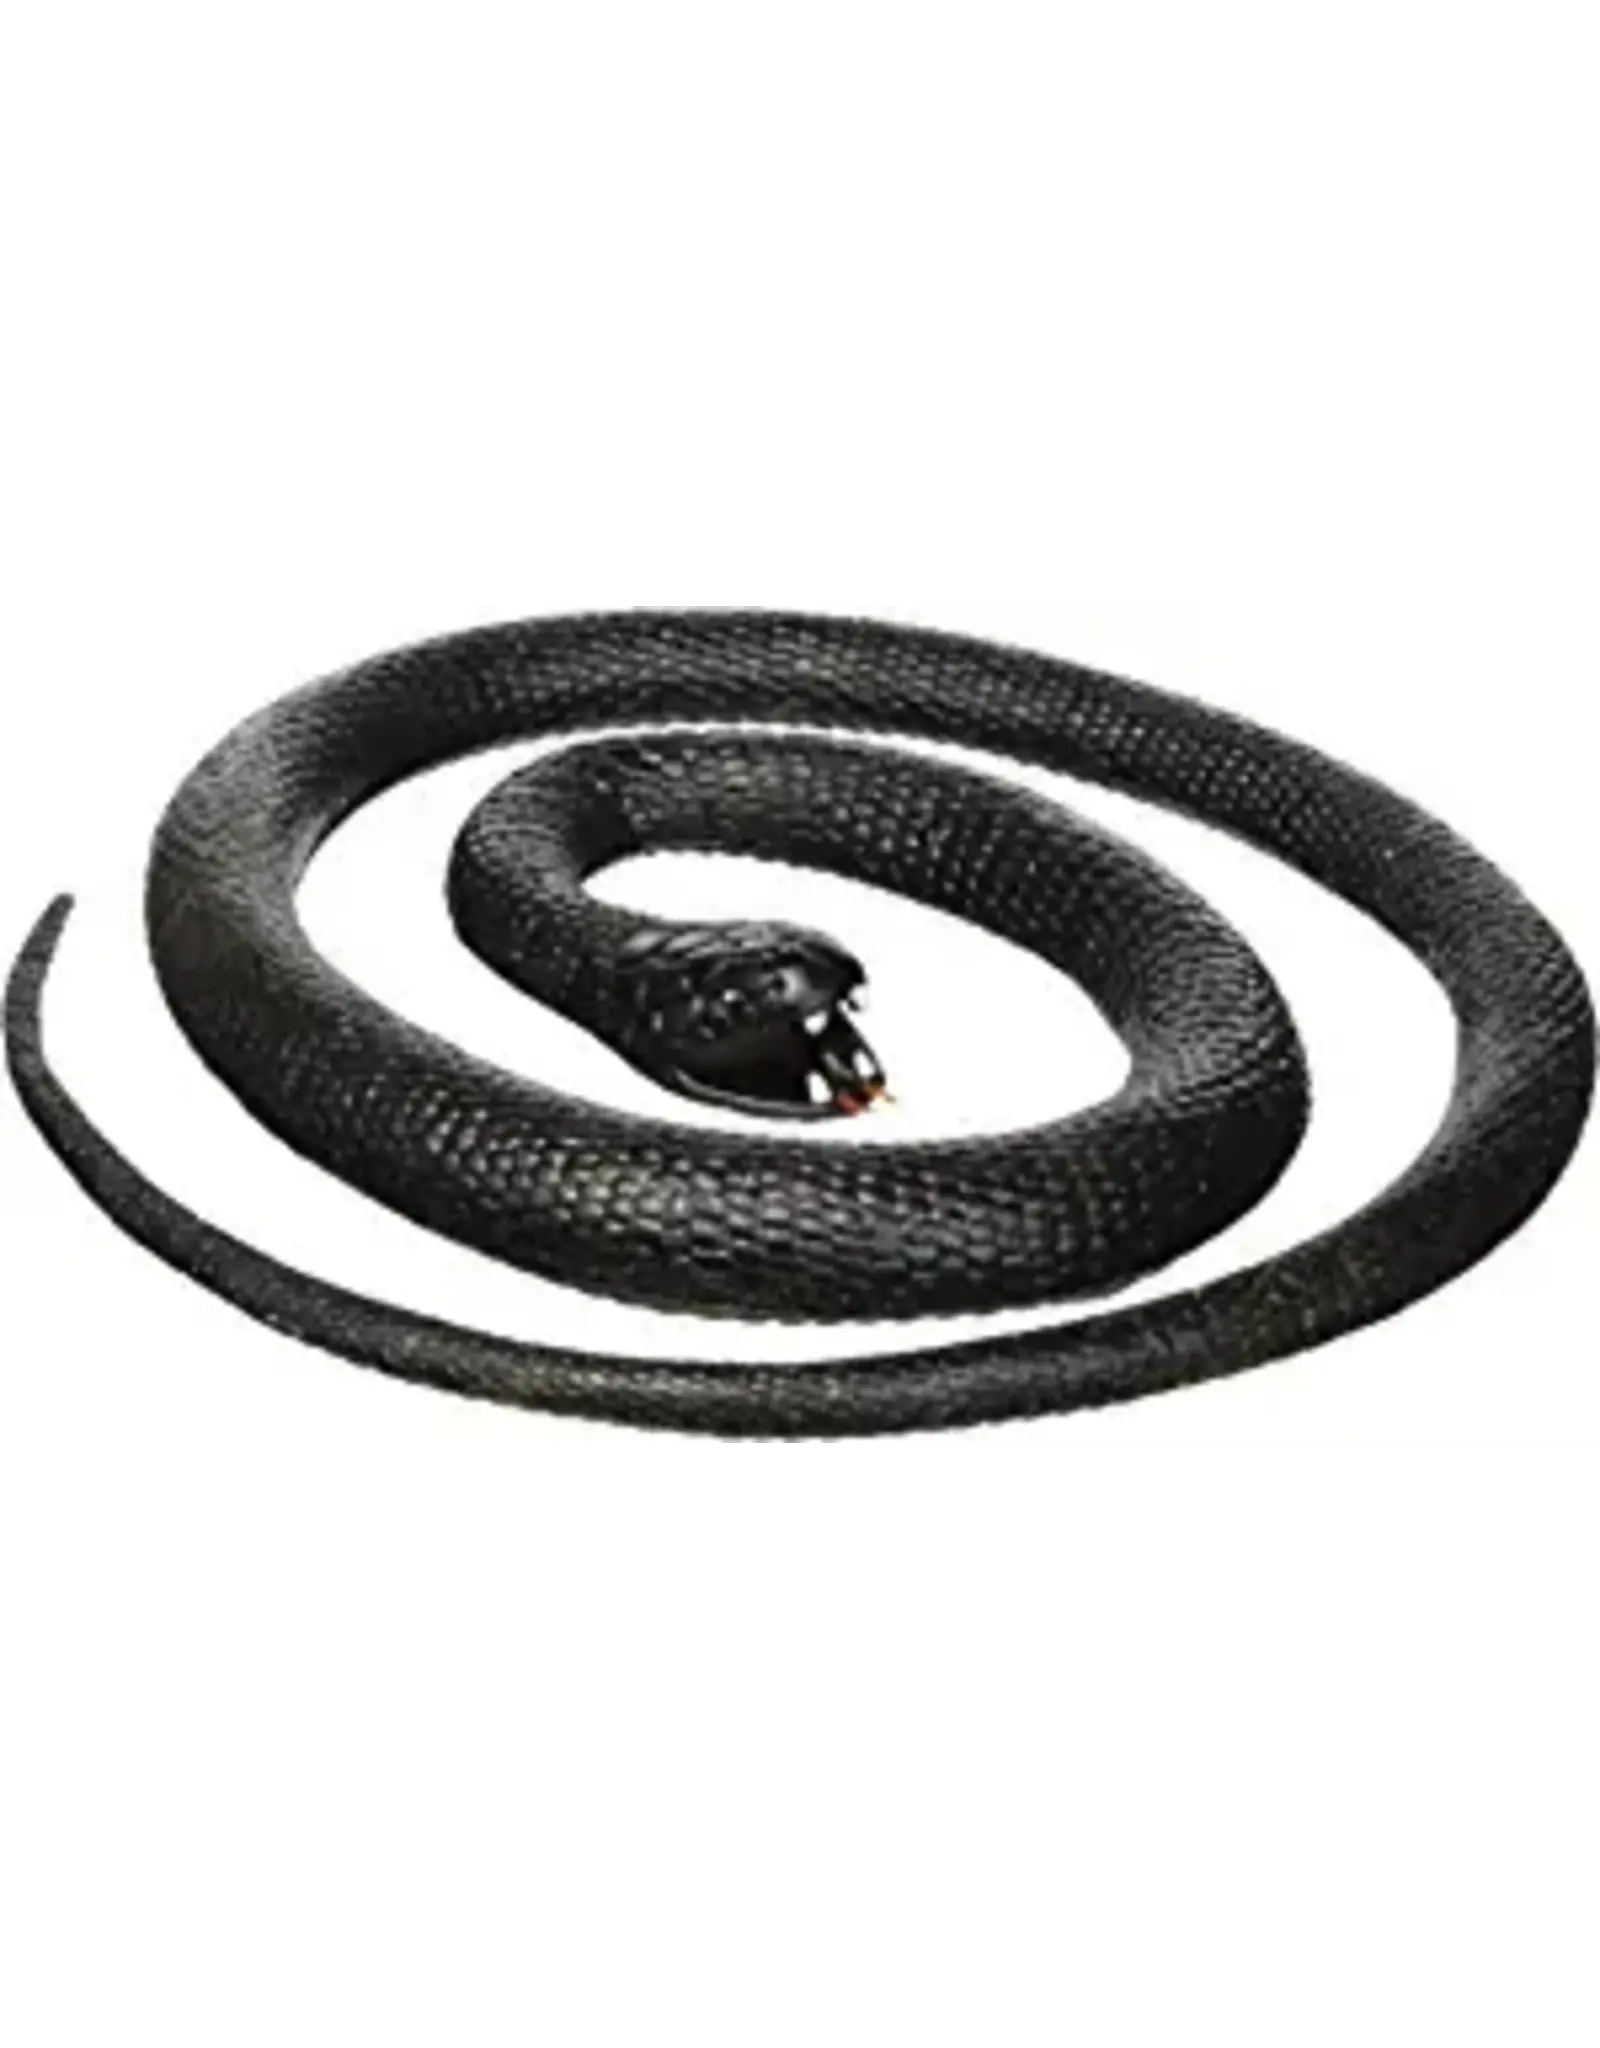 Rubber Snake - Black Mamba